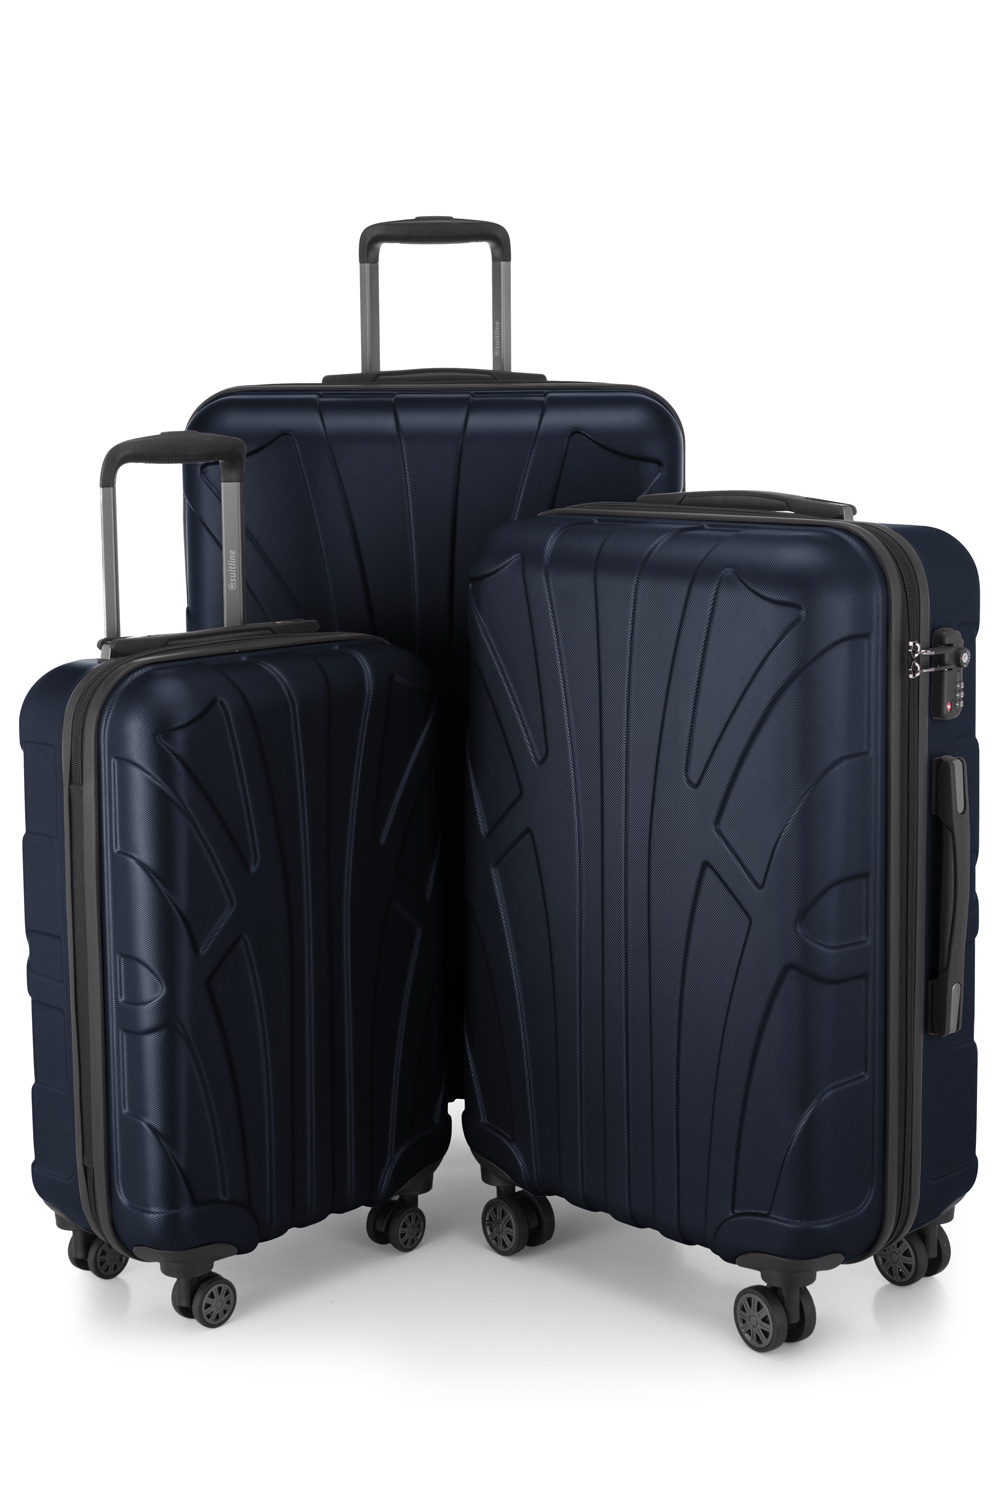 Kofferset 3 teilig, Hartschale ABS, Koffergrößen S/M/L, TSA-Zahlenschloss -  Dunkelblau